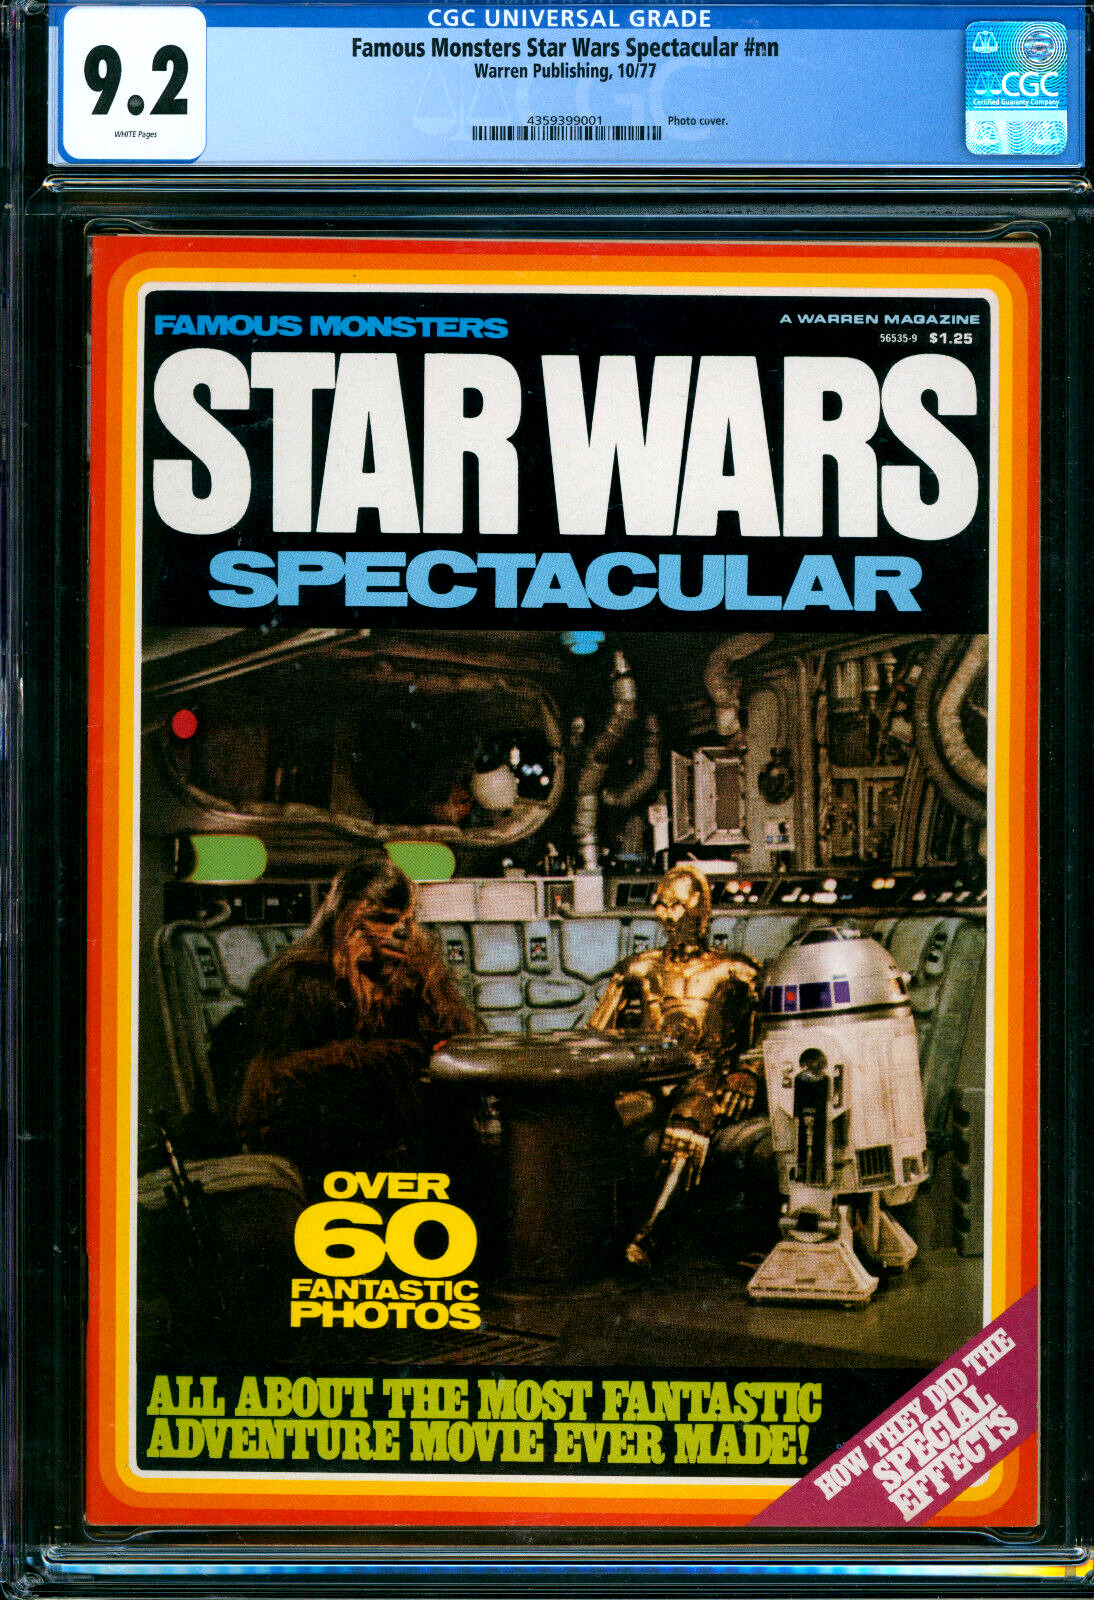 Famous Monsters Star Wars Spectacular Magazine Warren 1977 CGC 9.2